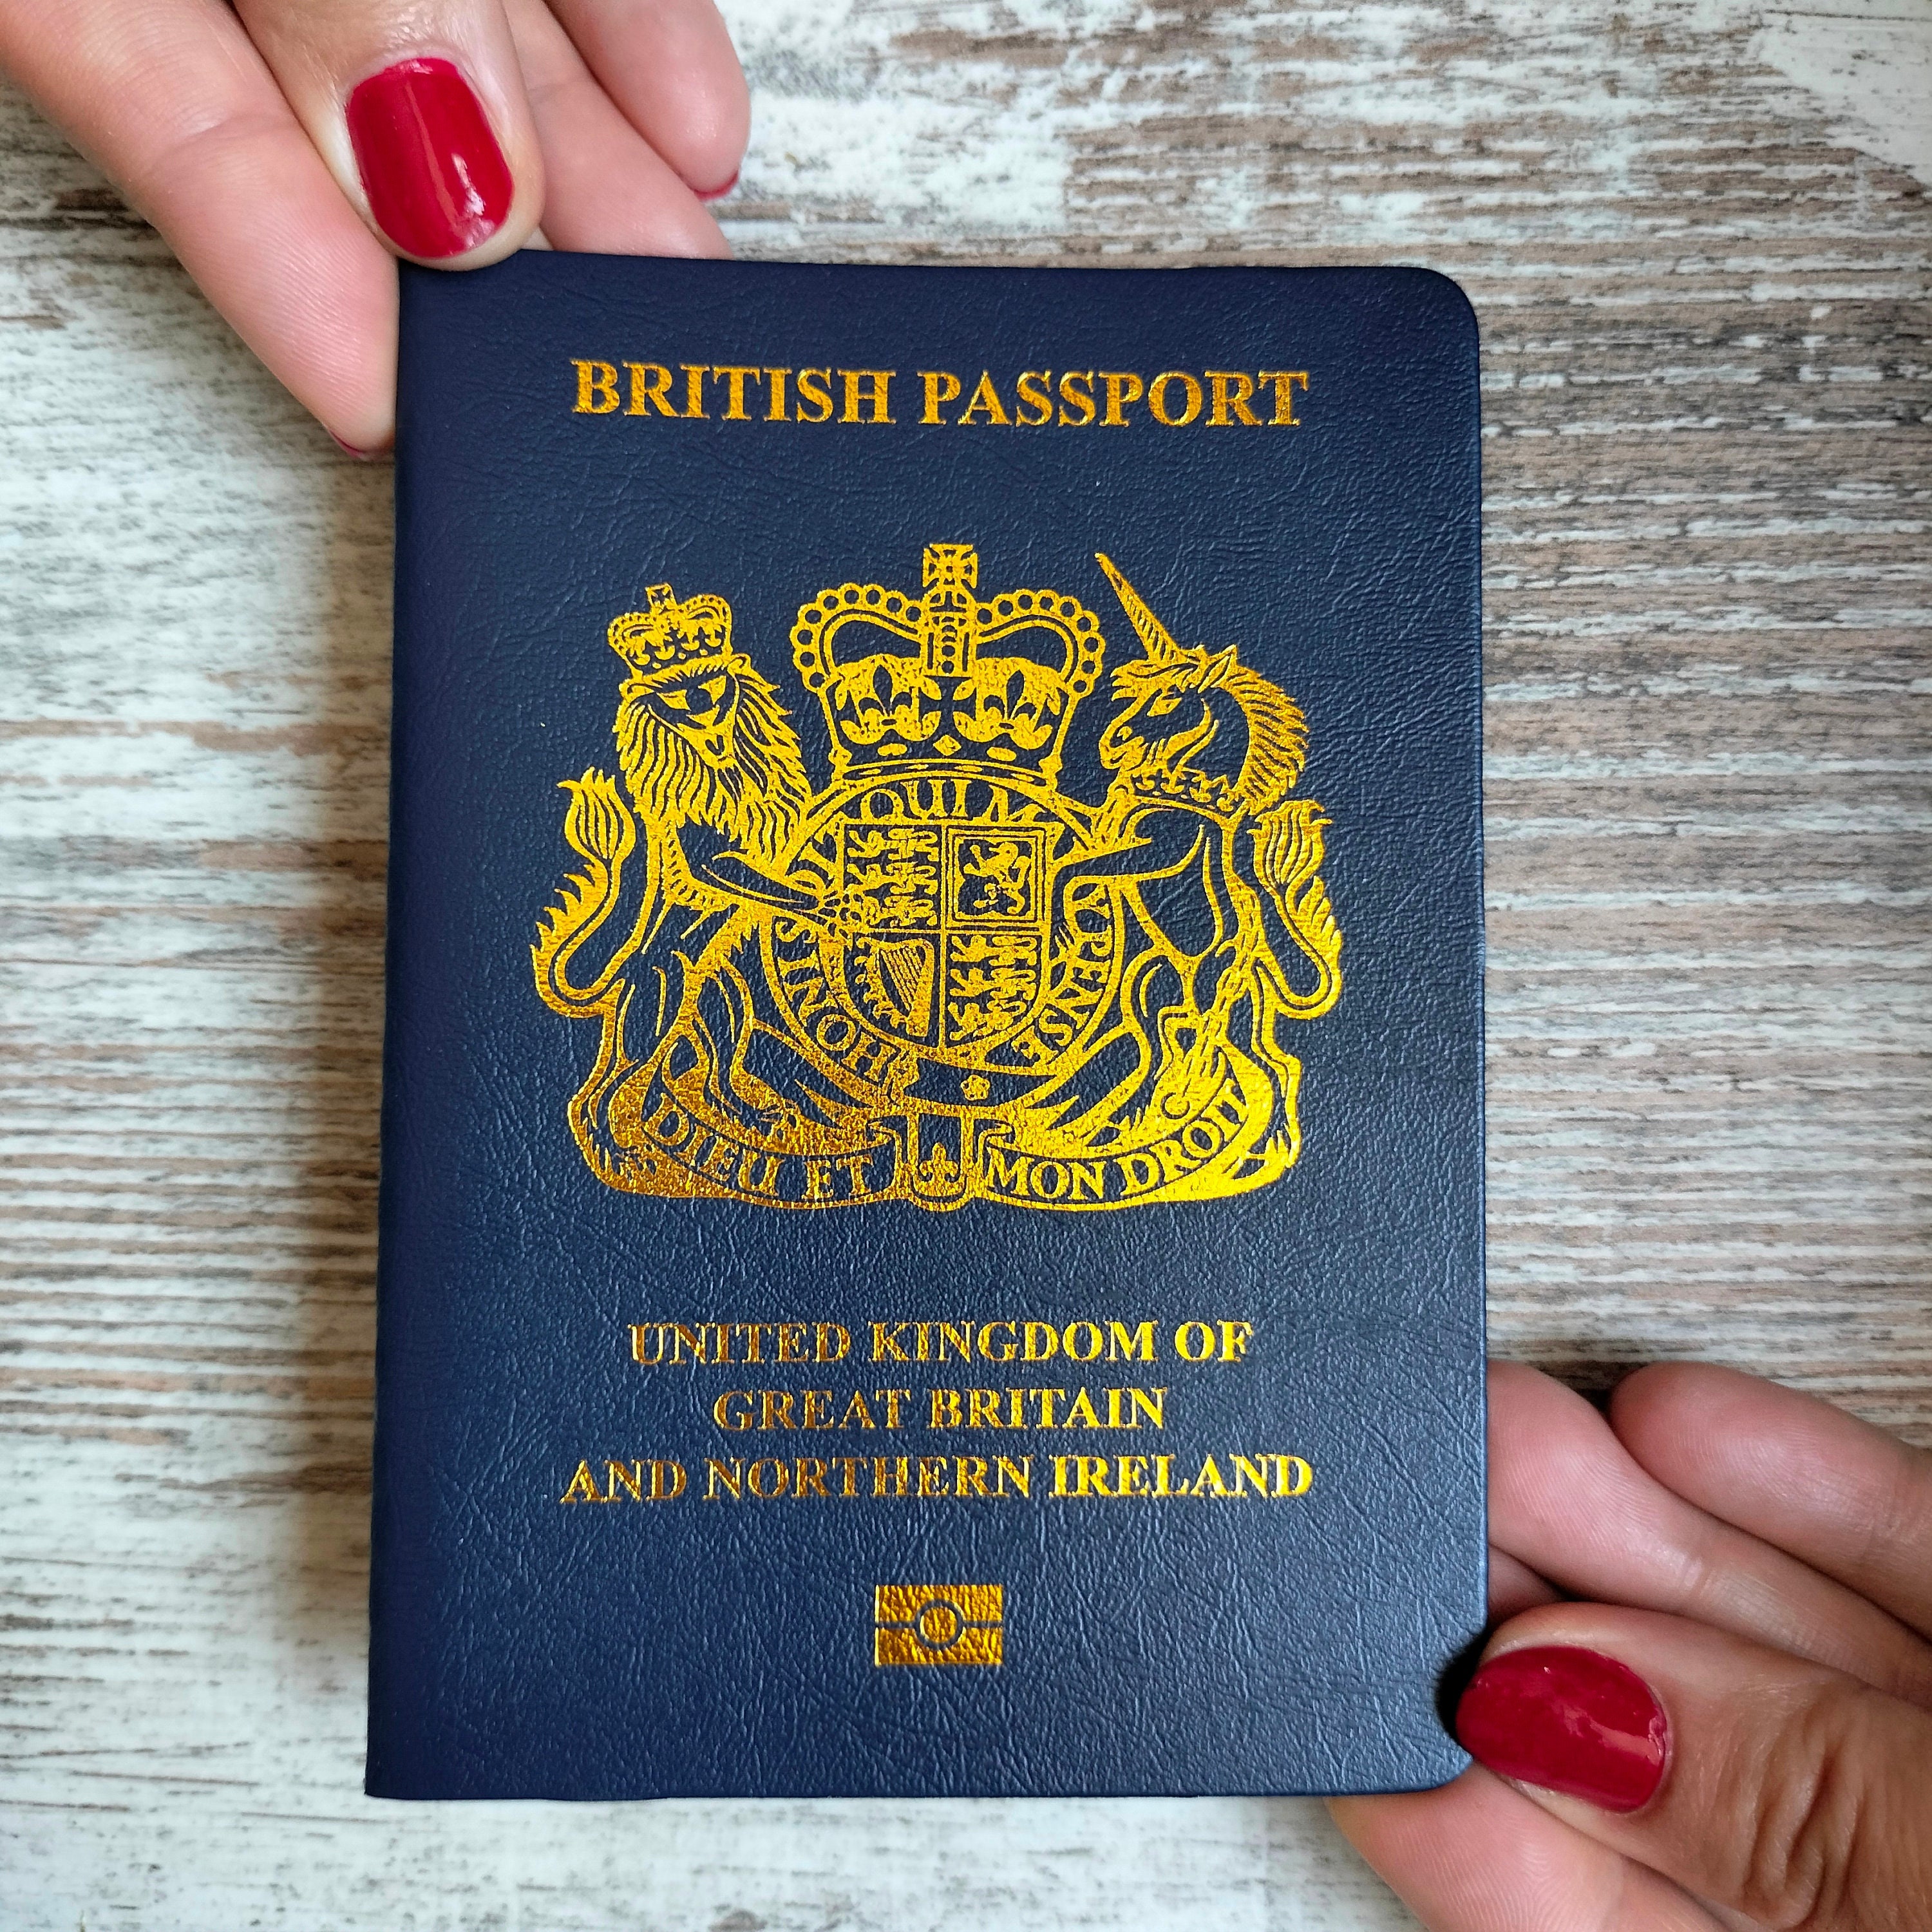 Glasgow Passport Case - British Tan Florentine Leather